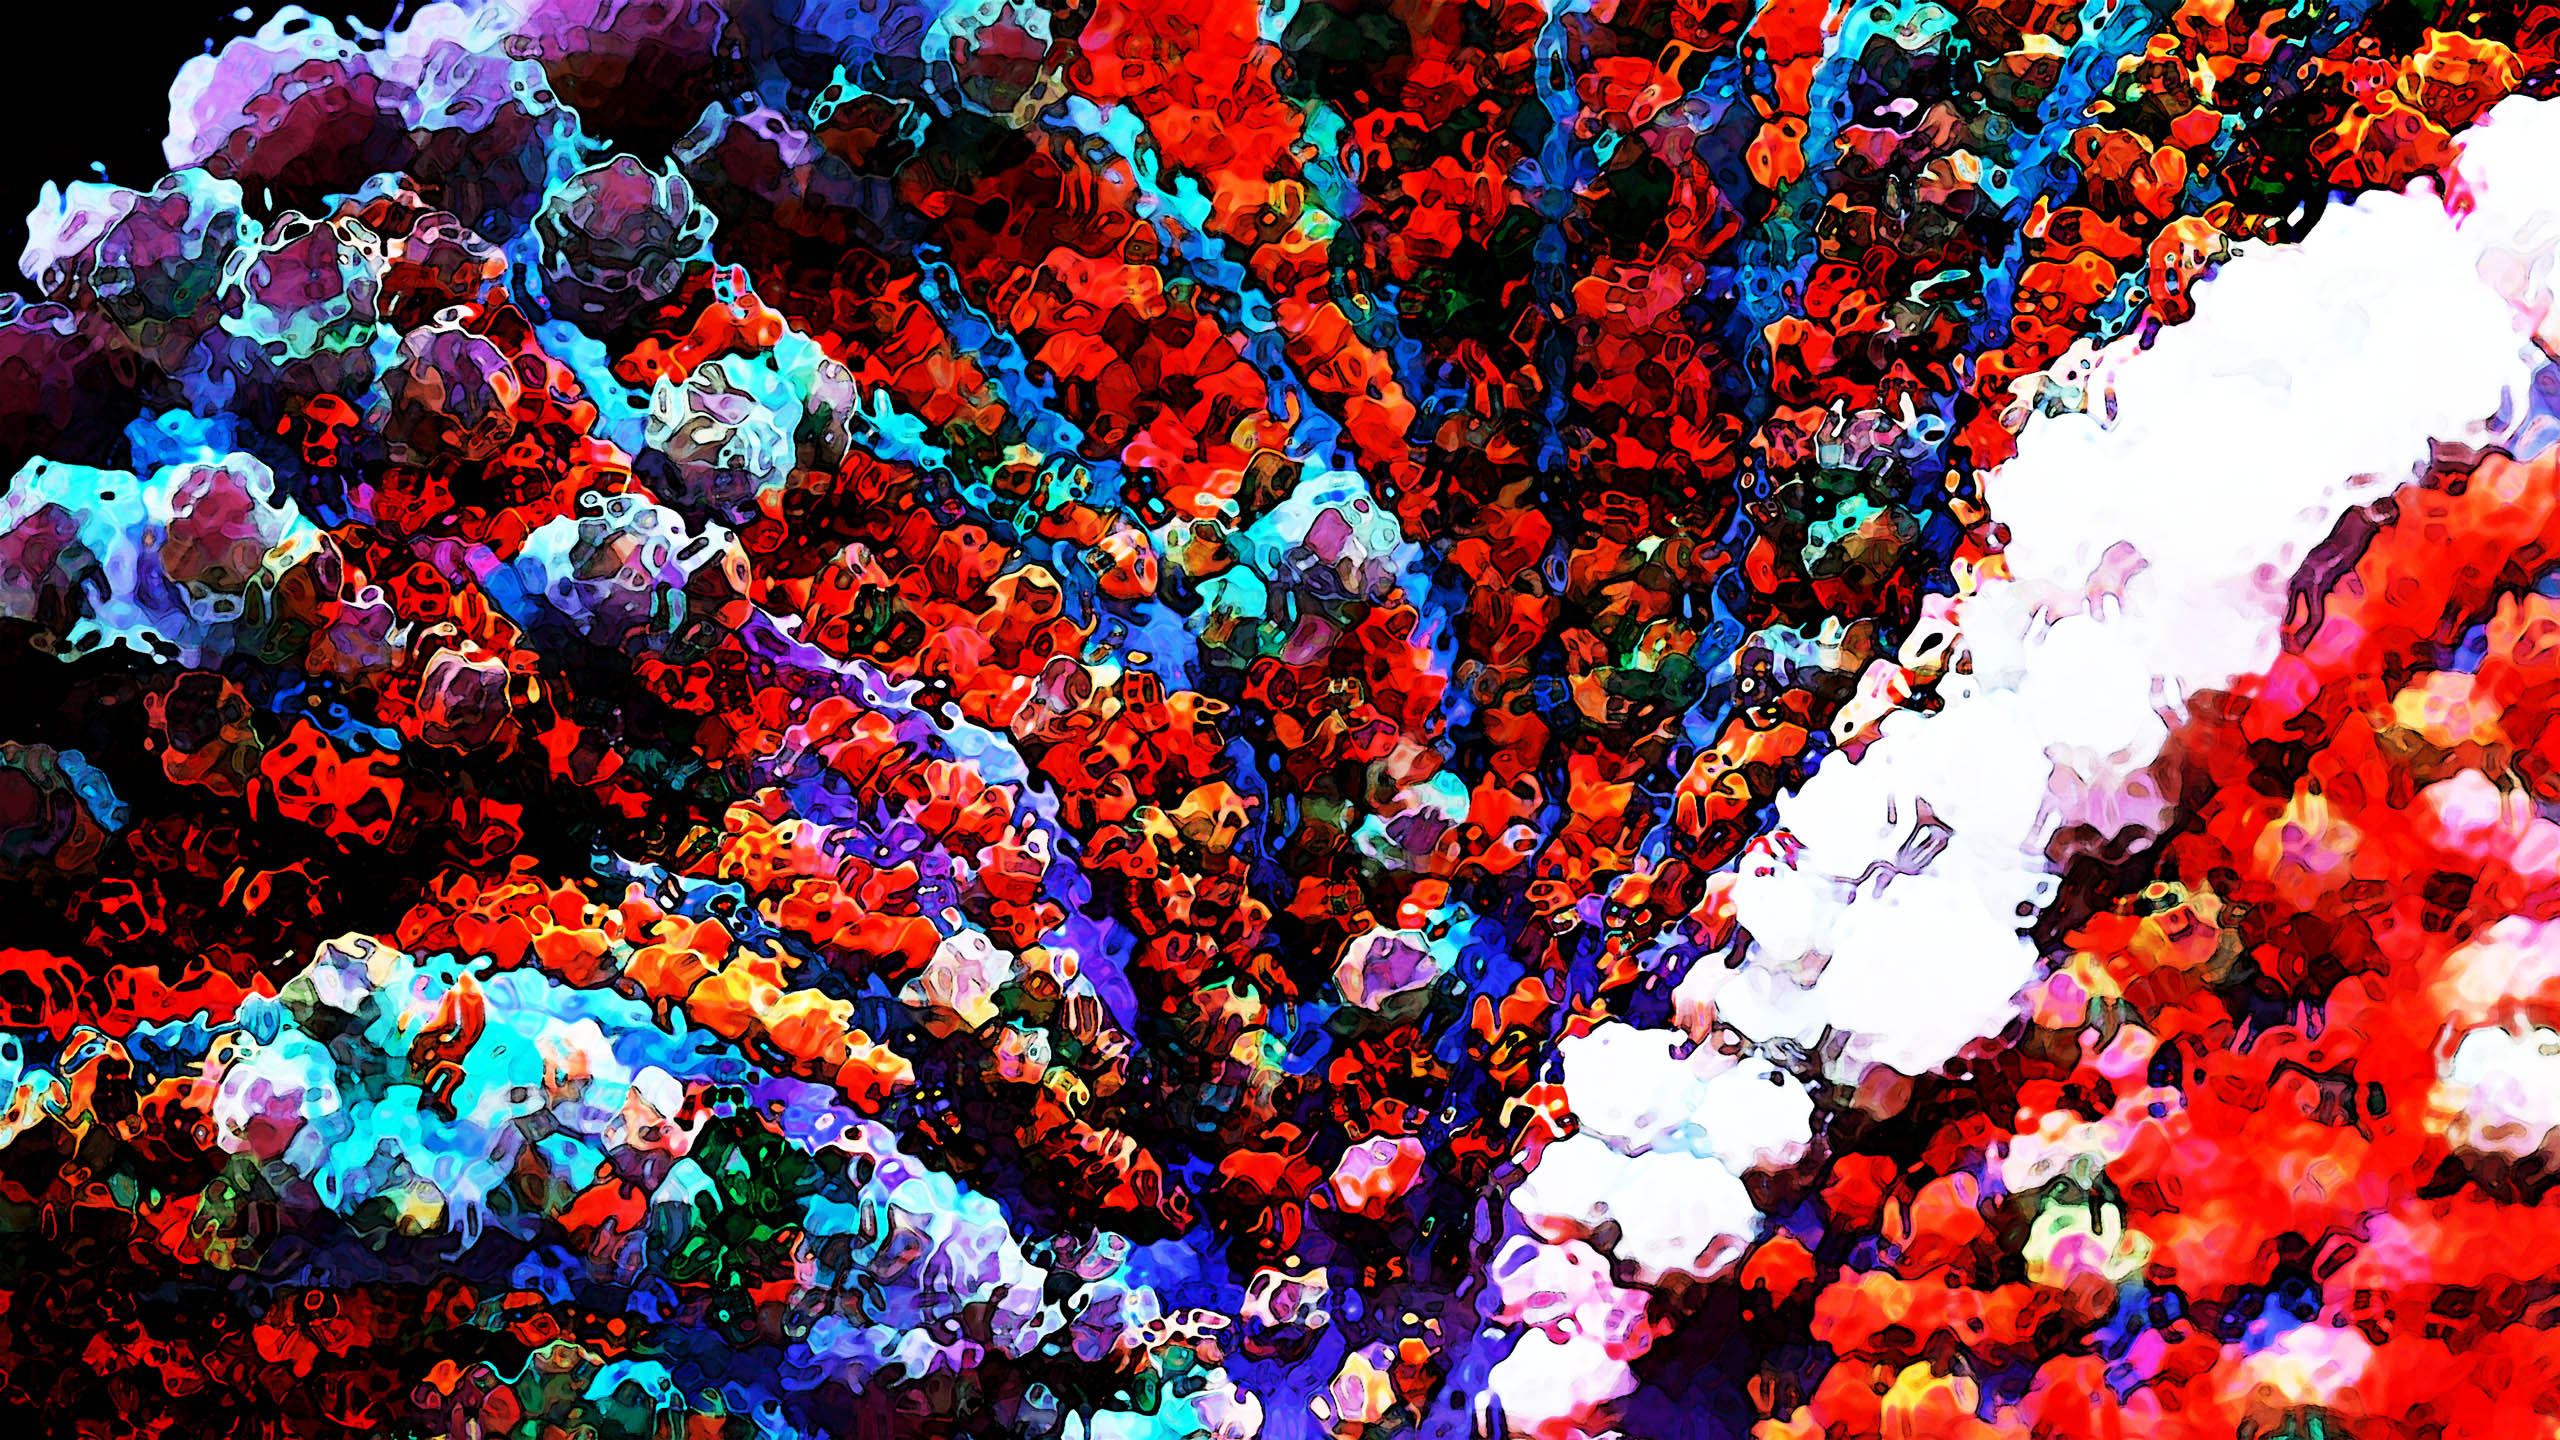 Su Precioso Coral #35 / Enrique Mateu